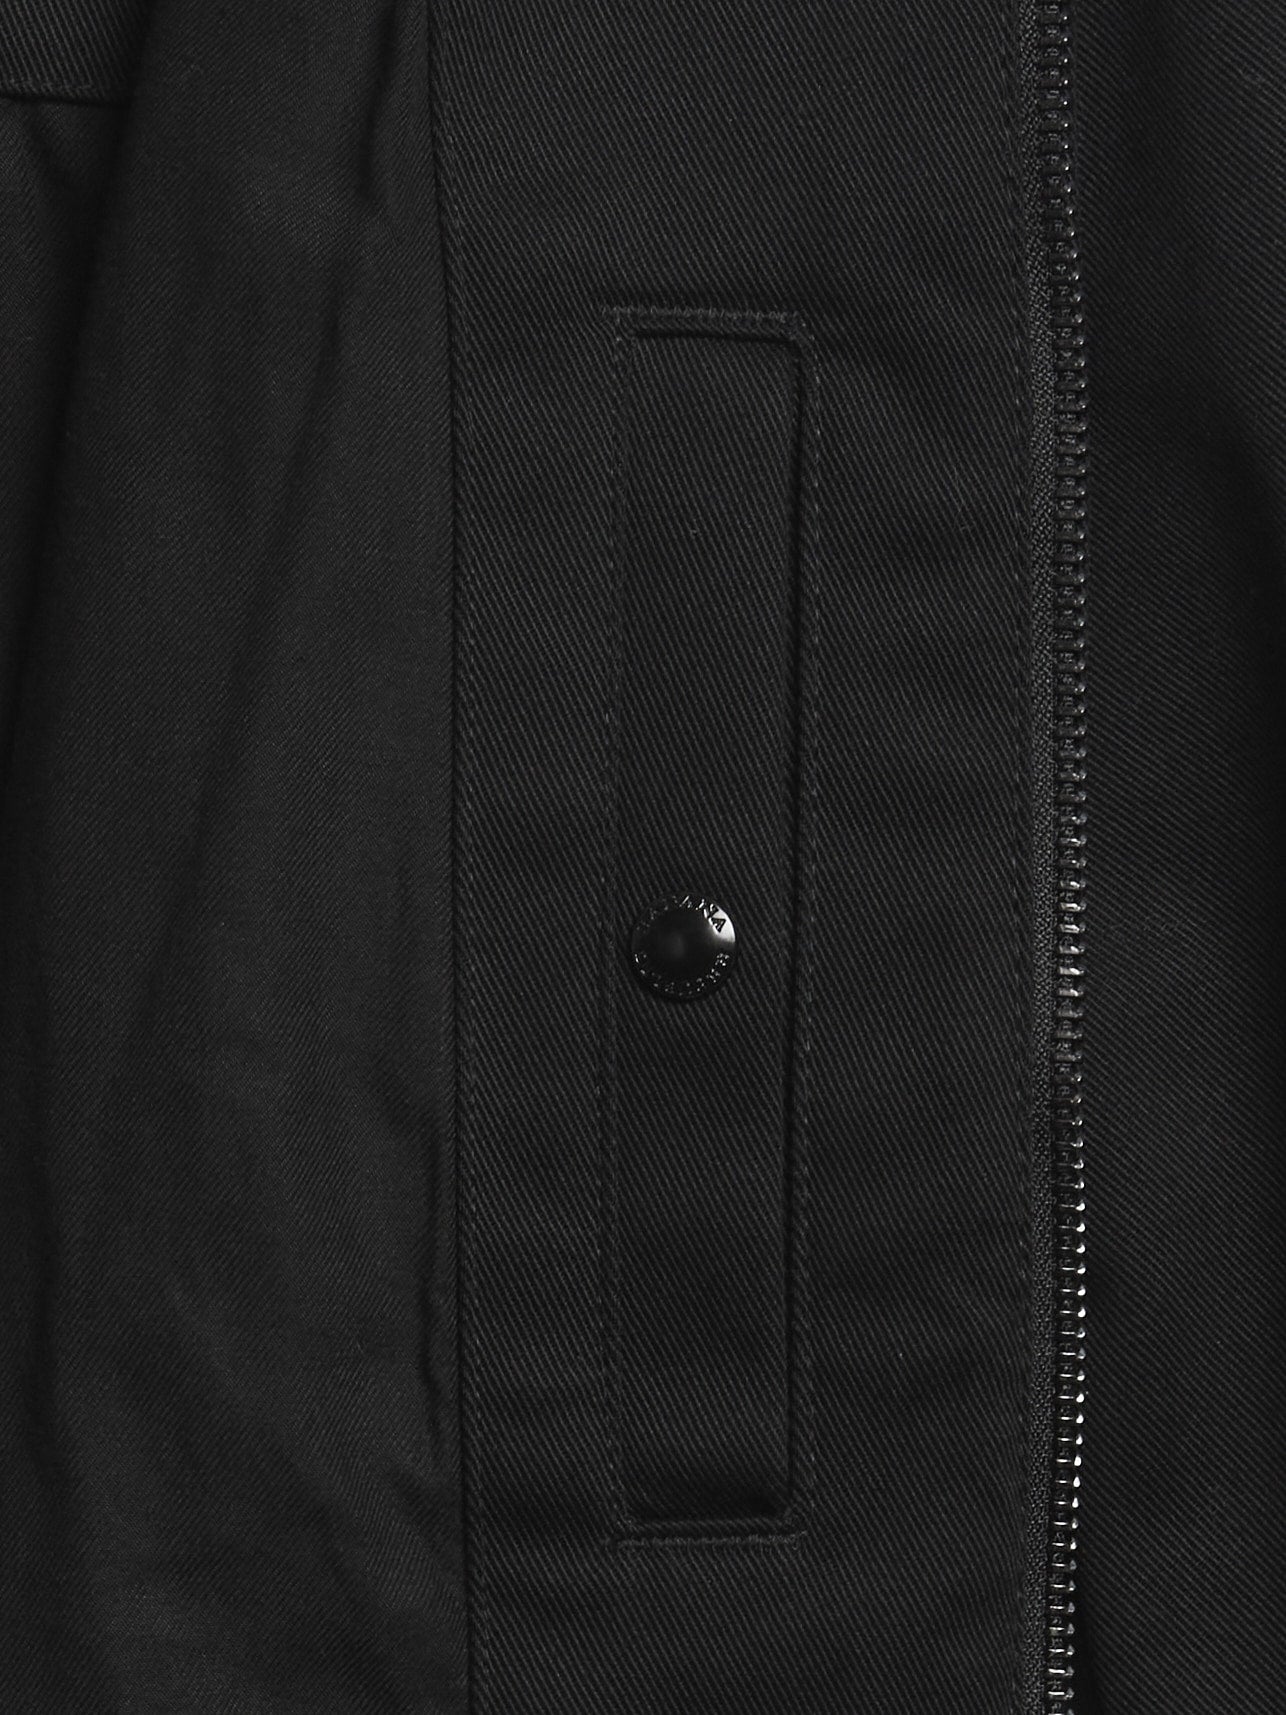 Harlan Cotton Jacket